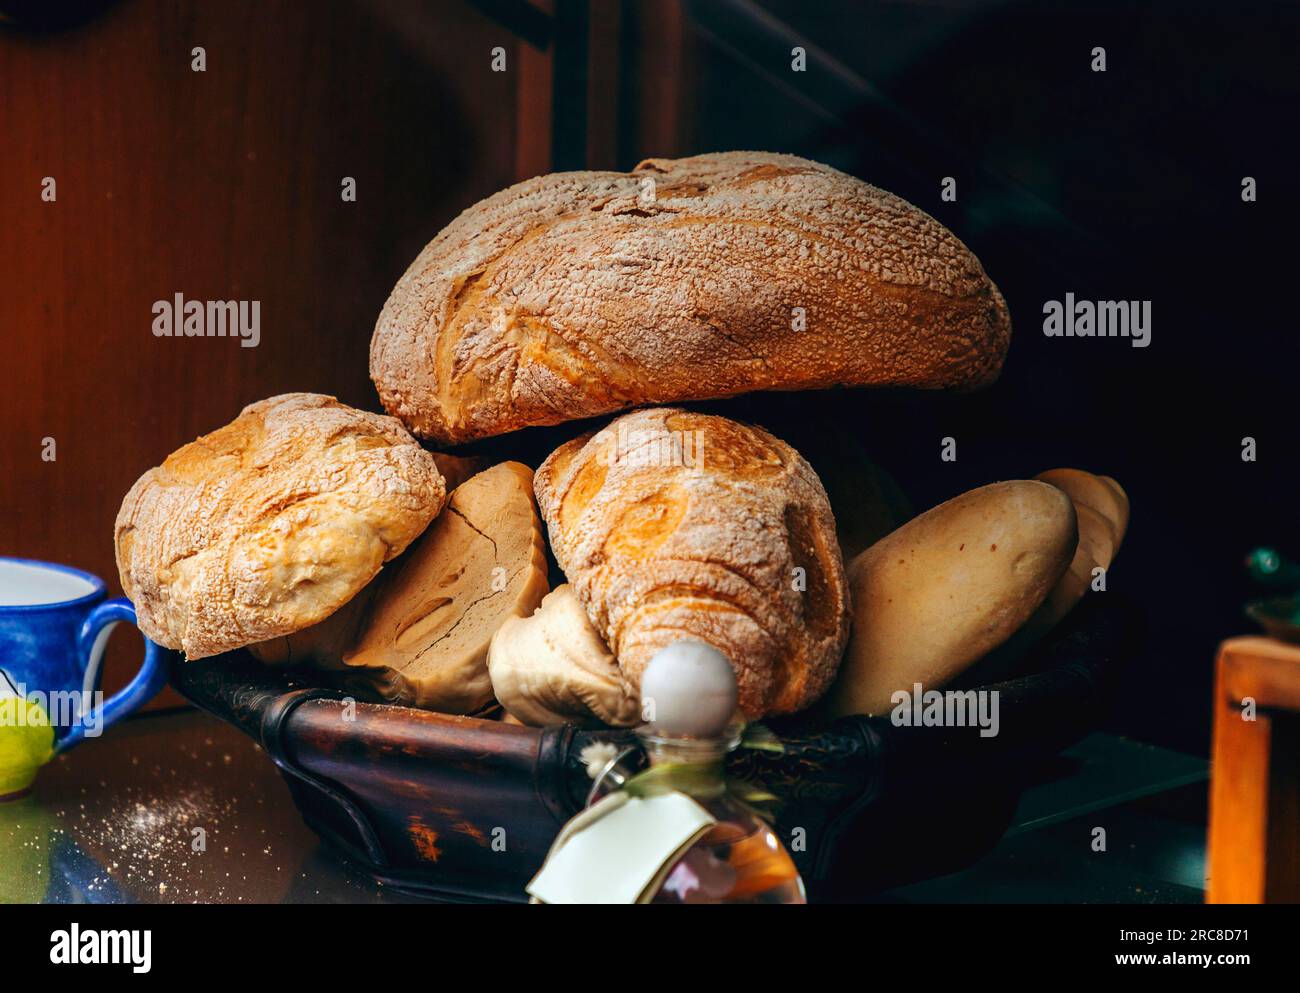 Diversi tipi di pane fresco italiano in un cestino Foto Stock